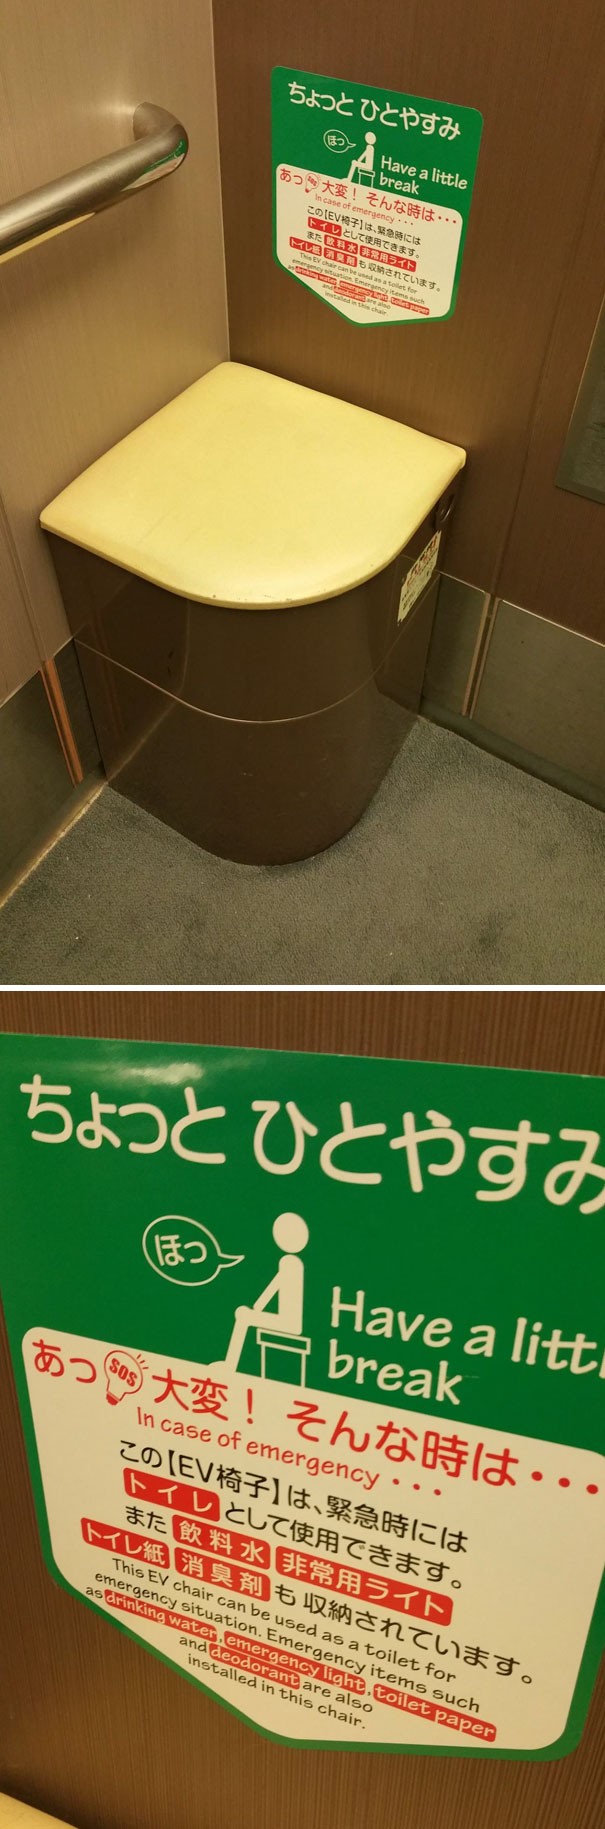 In alcuni ascensori c'è una toilette di emergenza, dotata di carta igienica e deodorante!